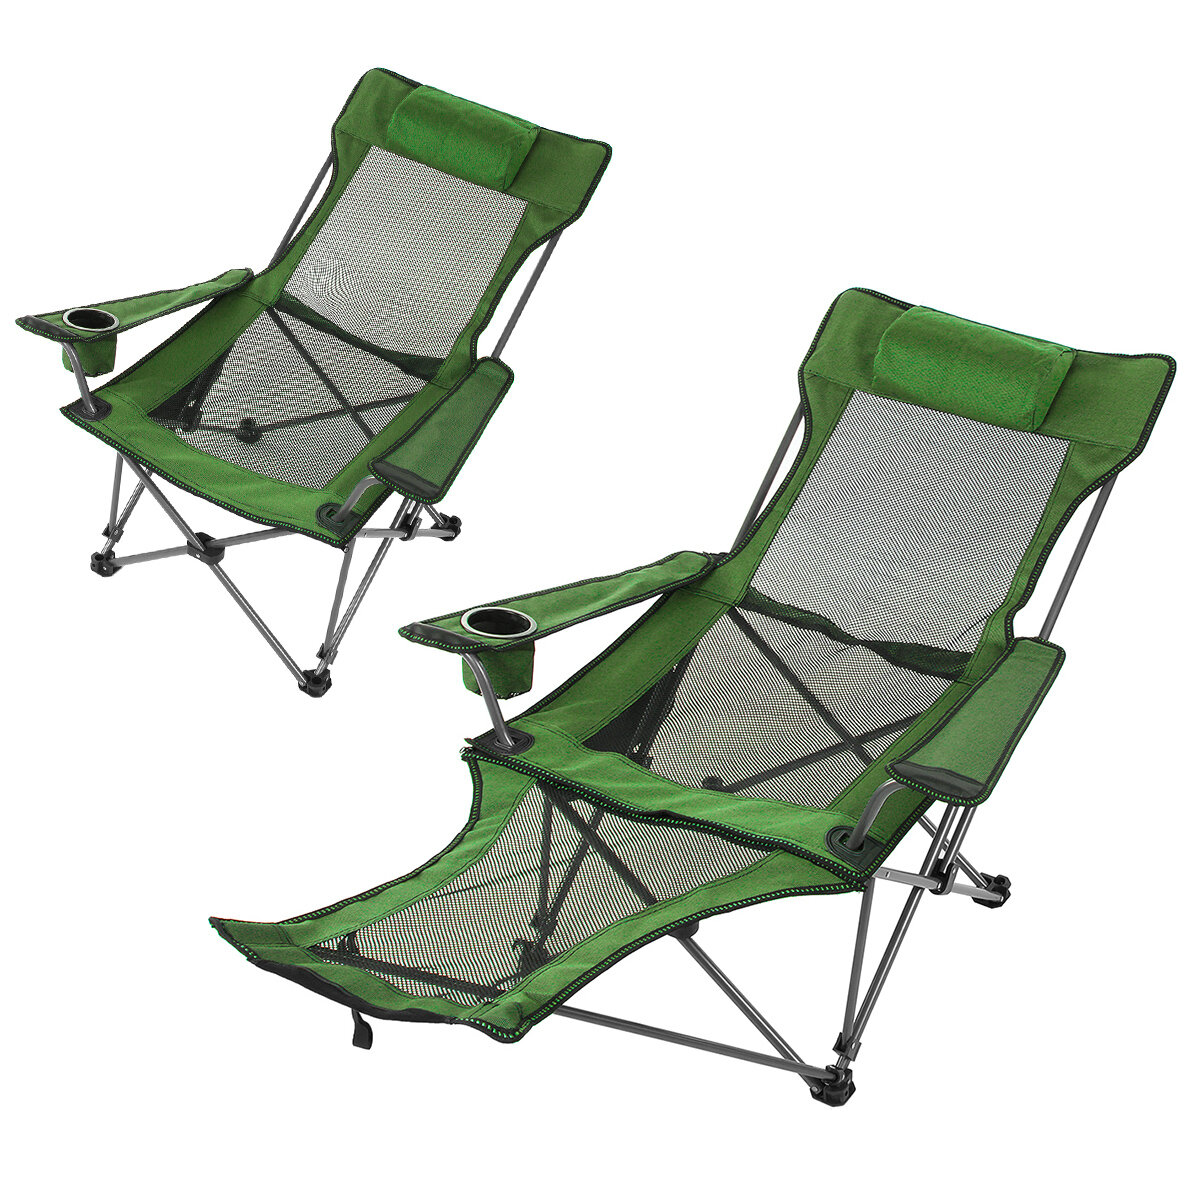 Chaise pliante Portable plage déjeuner sieste chaise pique-nique Barbecue bureau inclinable chaise Camping en plein air